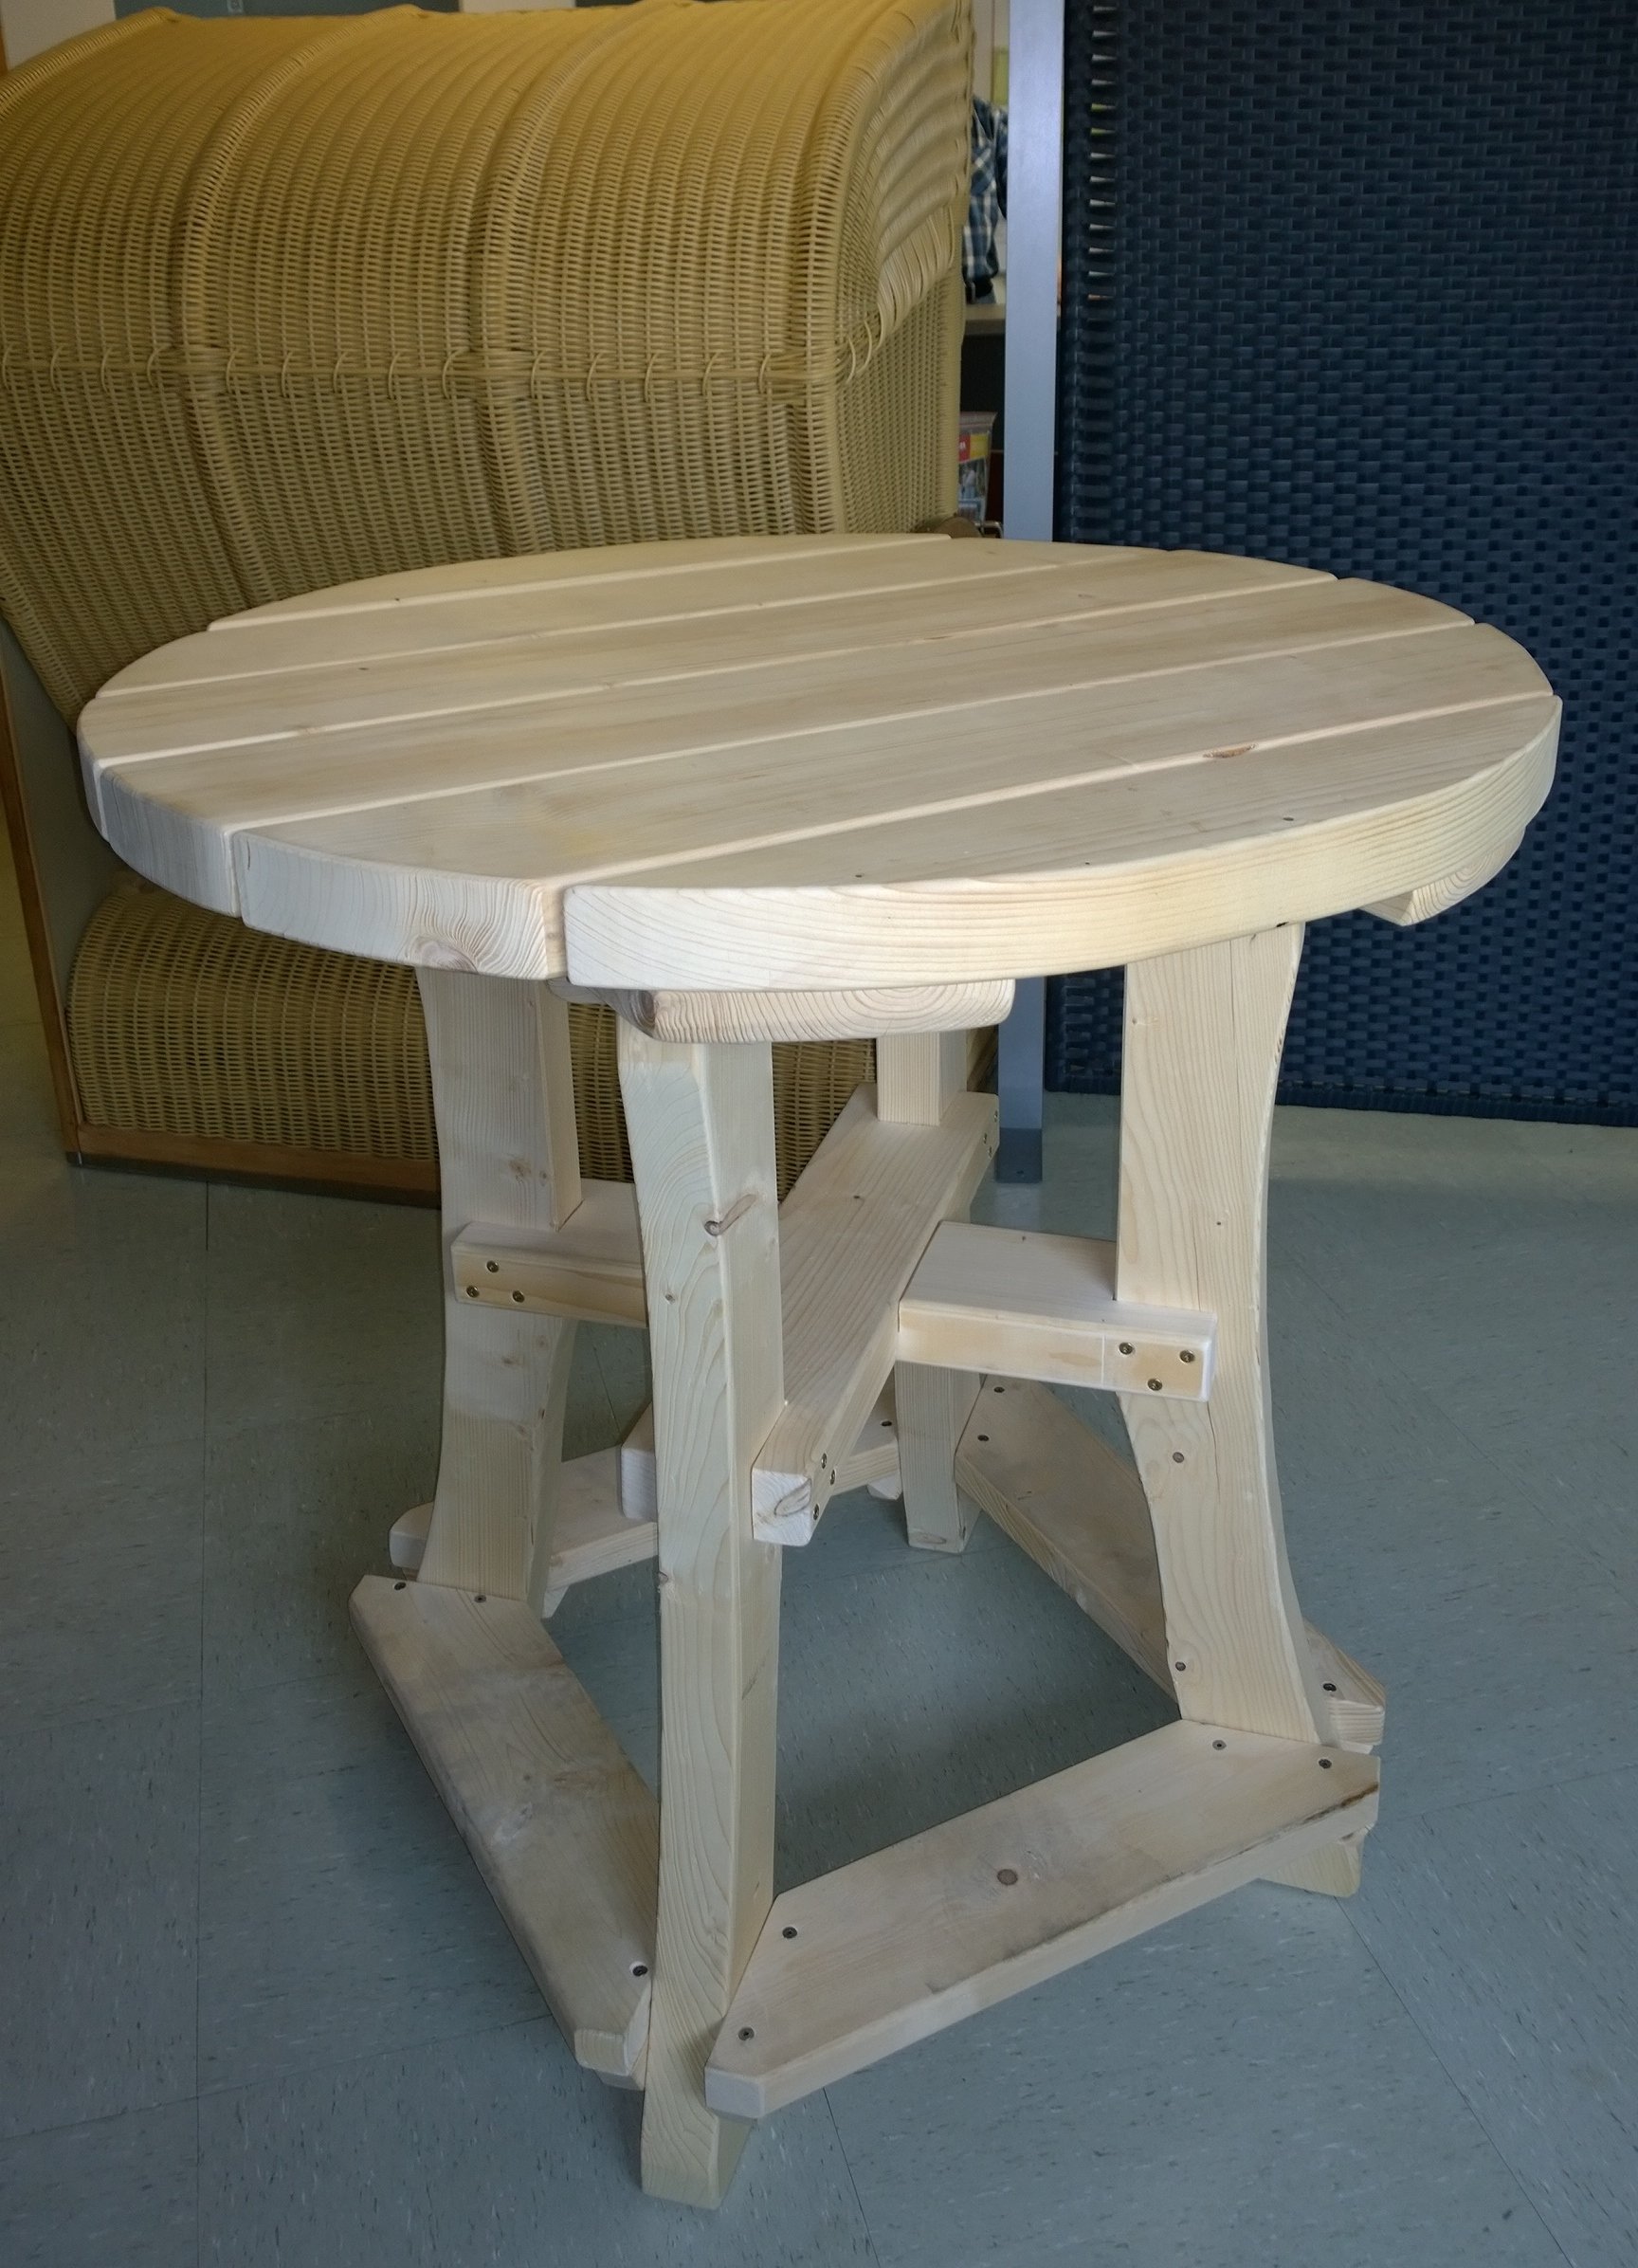 SAUERLAND Partytisch, DER stabile Stehtisch aus Fichtenholz natur, Ø 110 cm x H 107 cm